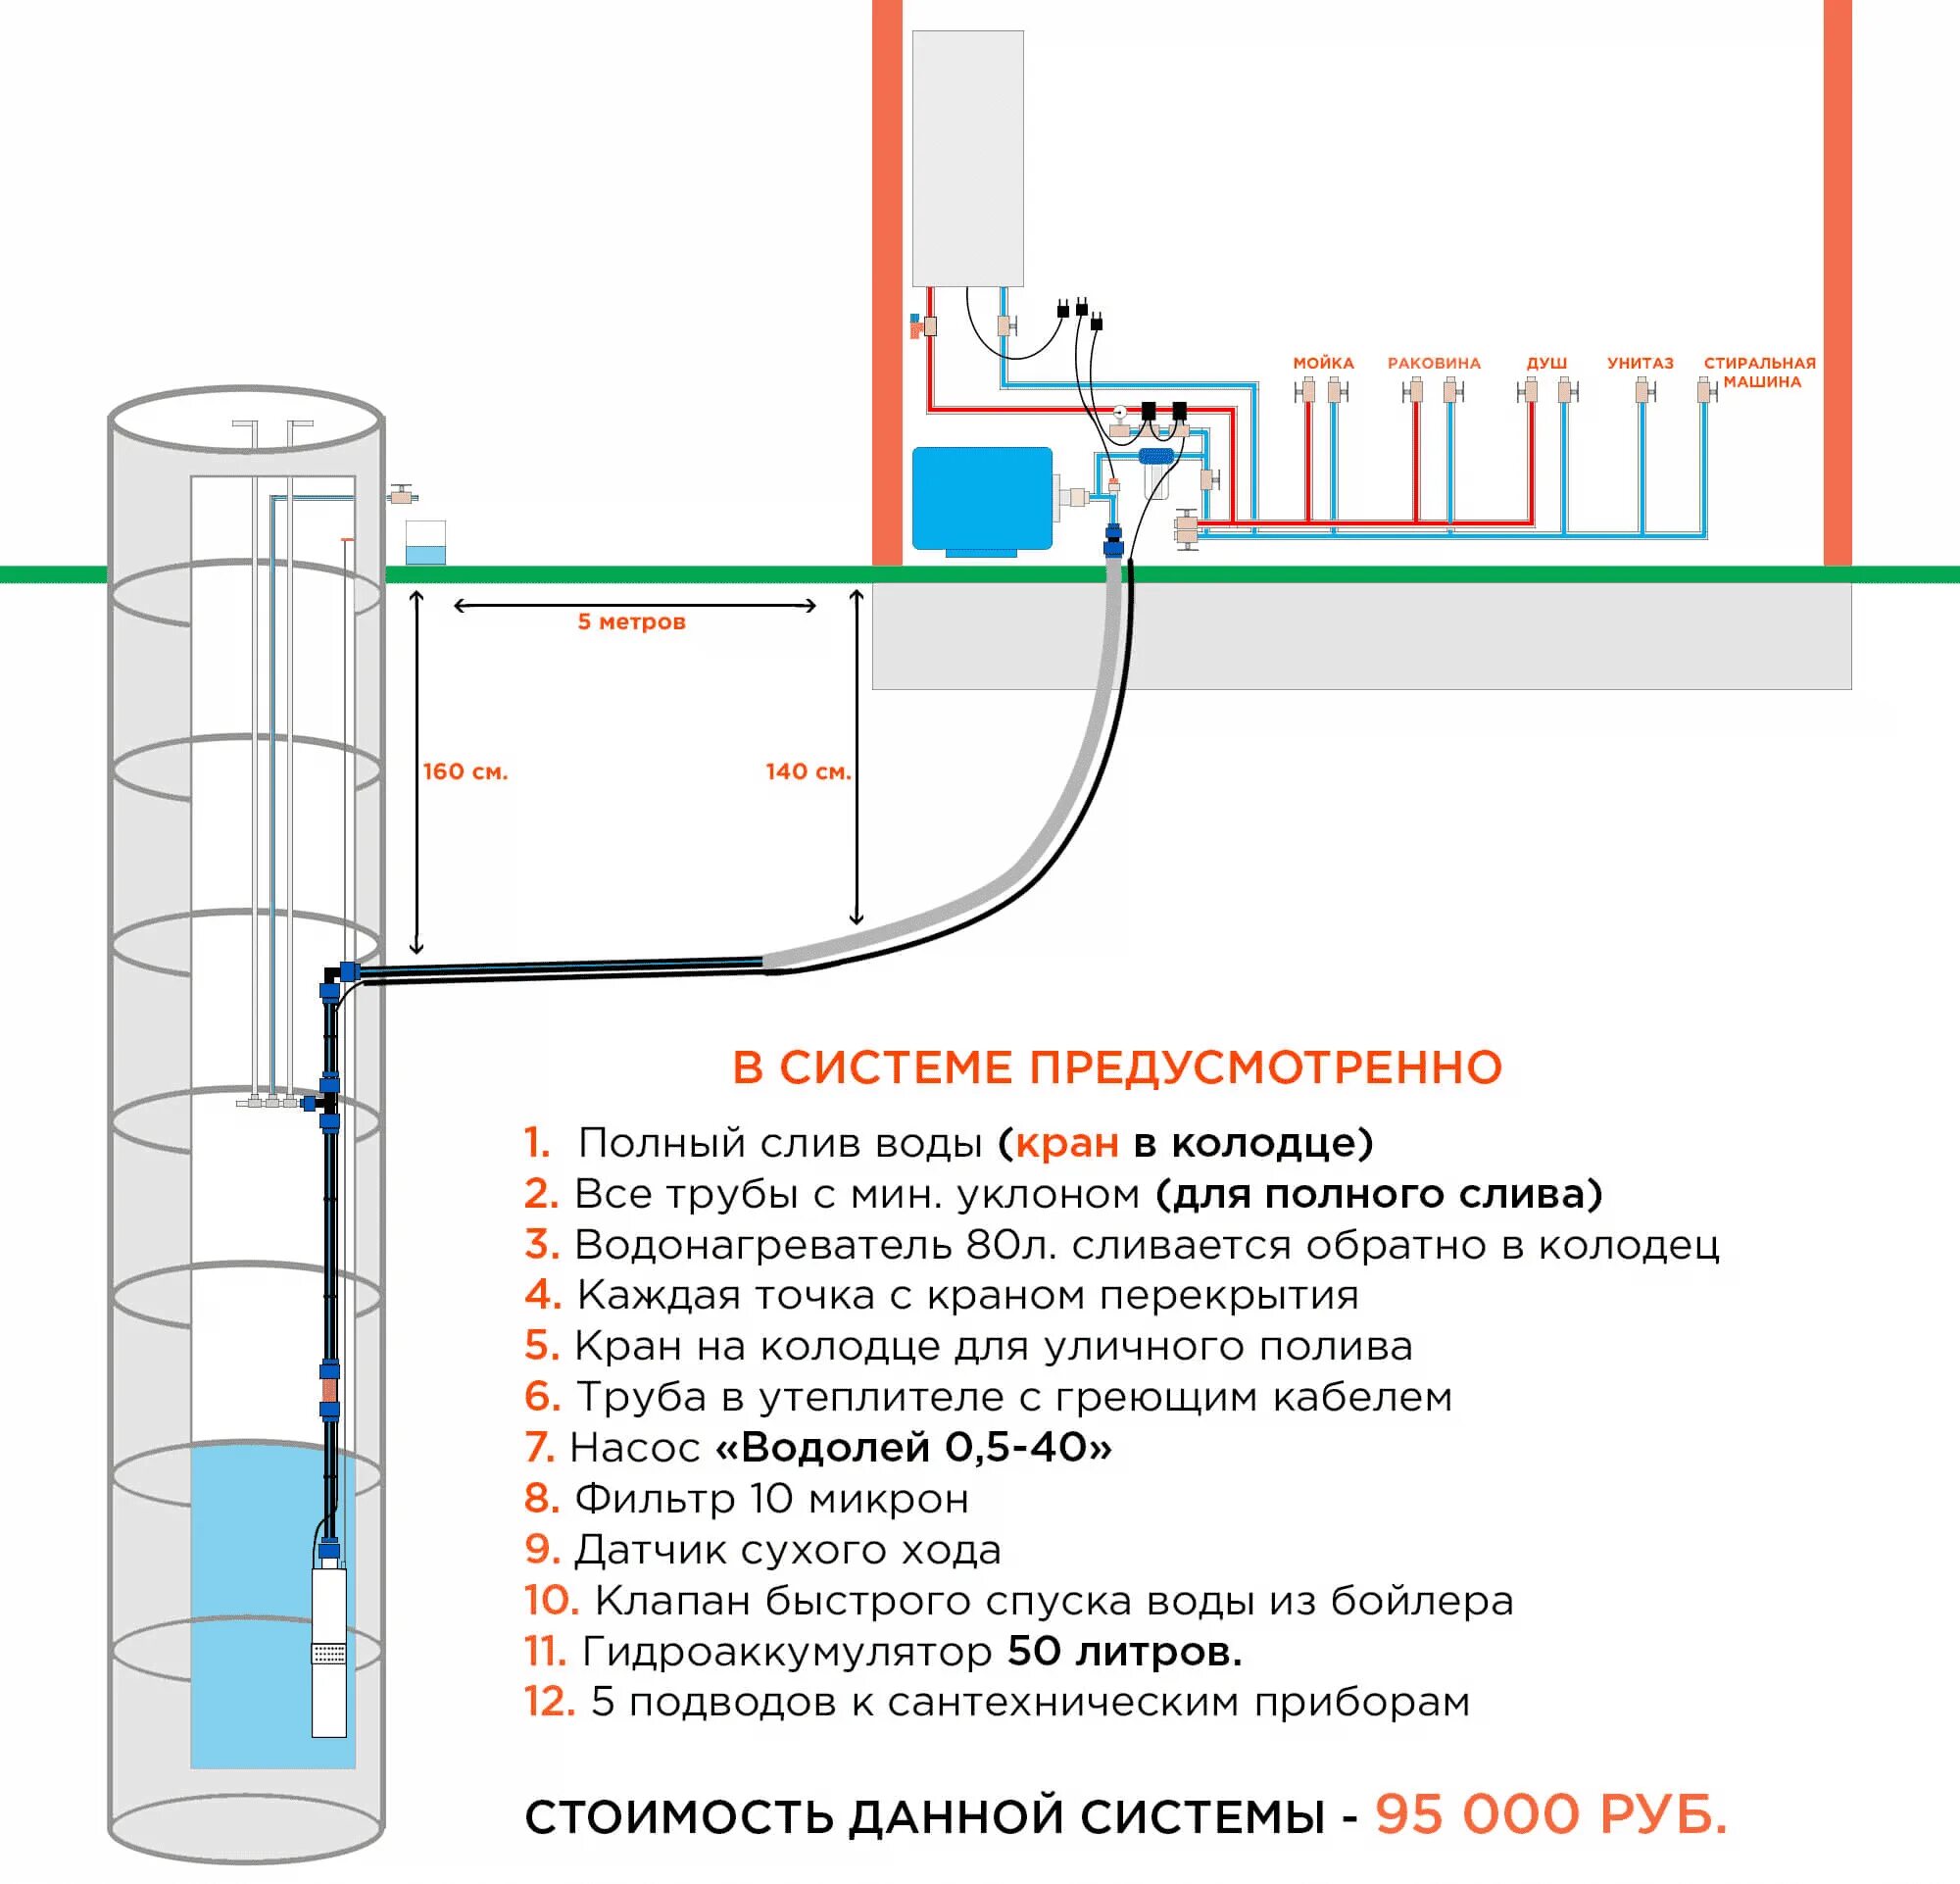 Подключить высокого водопроводу. Схема водопровода из колодца с греющим кабелем. Схема подключения дачного водопровода из колодца с погружным насосом. Схема подключения глубинного насоса к водопроводу. Схемы водоснабжение частного дома из скважины схема.